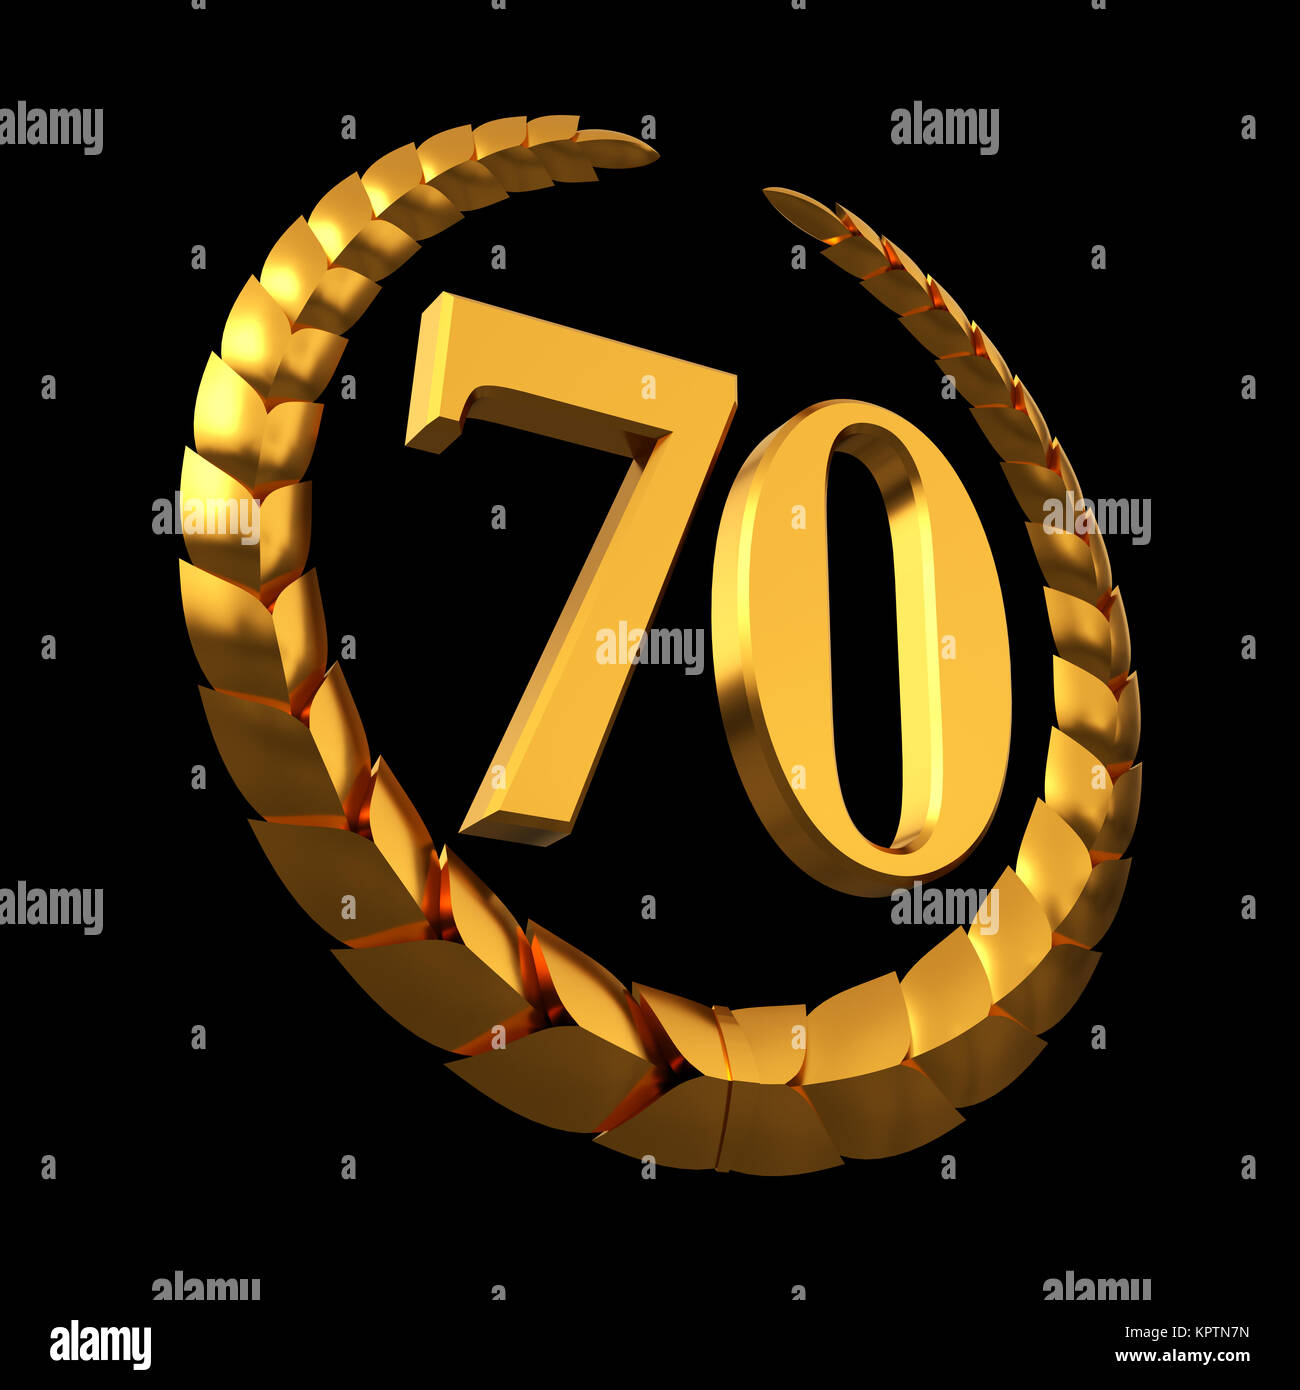 Aniversario corona de laurel de oro y numeral 70 sobre fondo negro Foto de stock